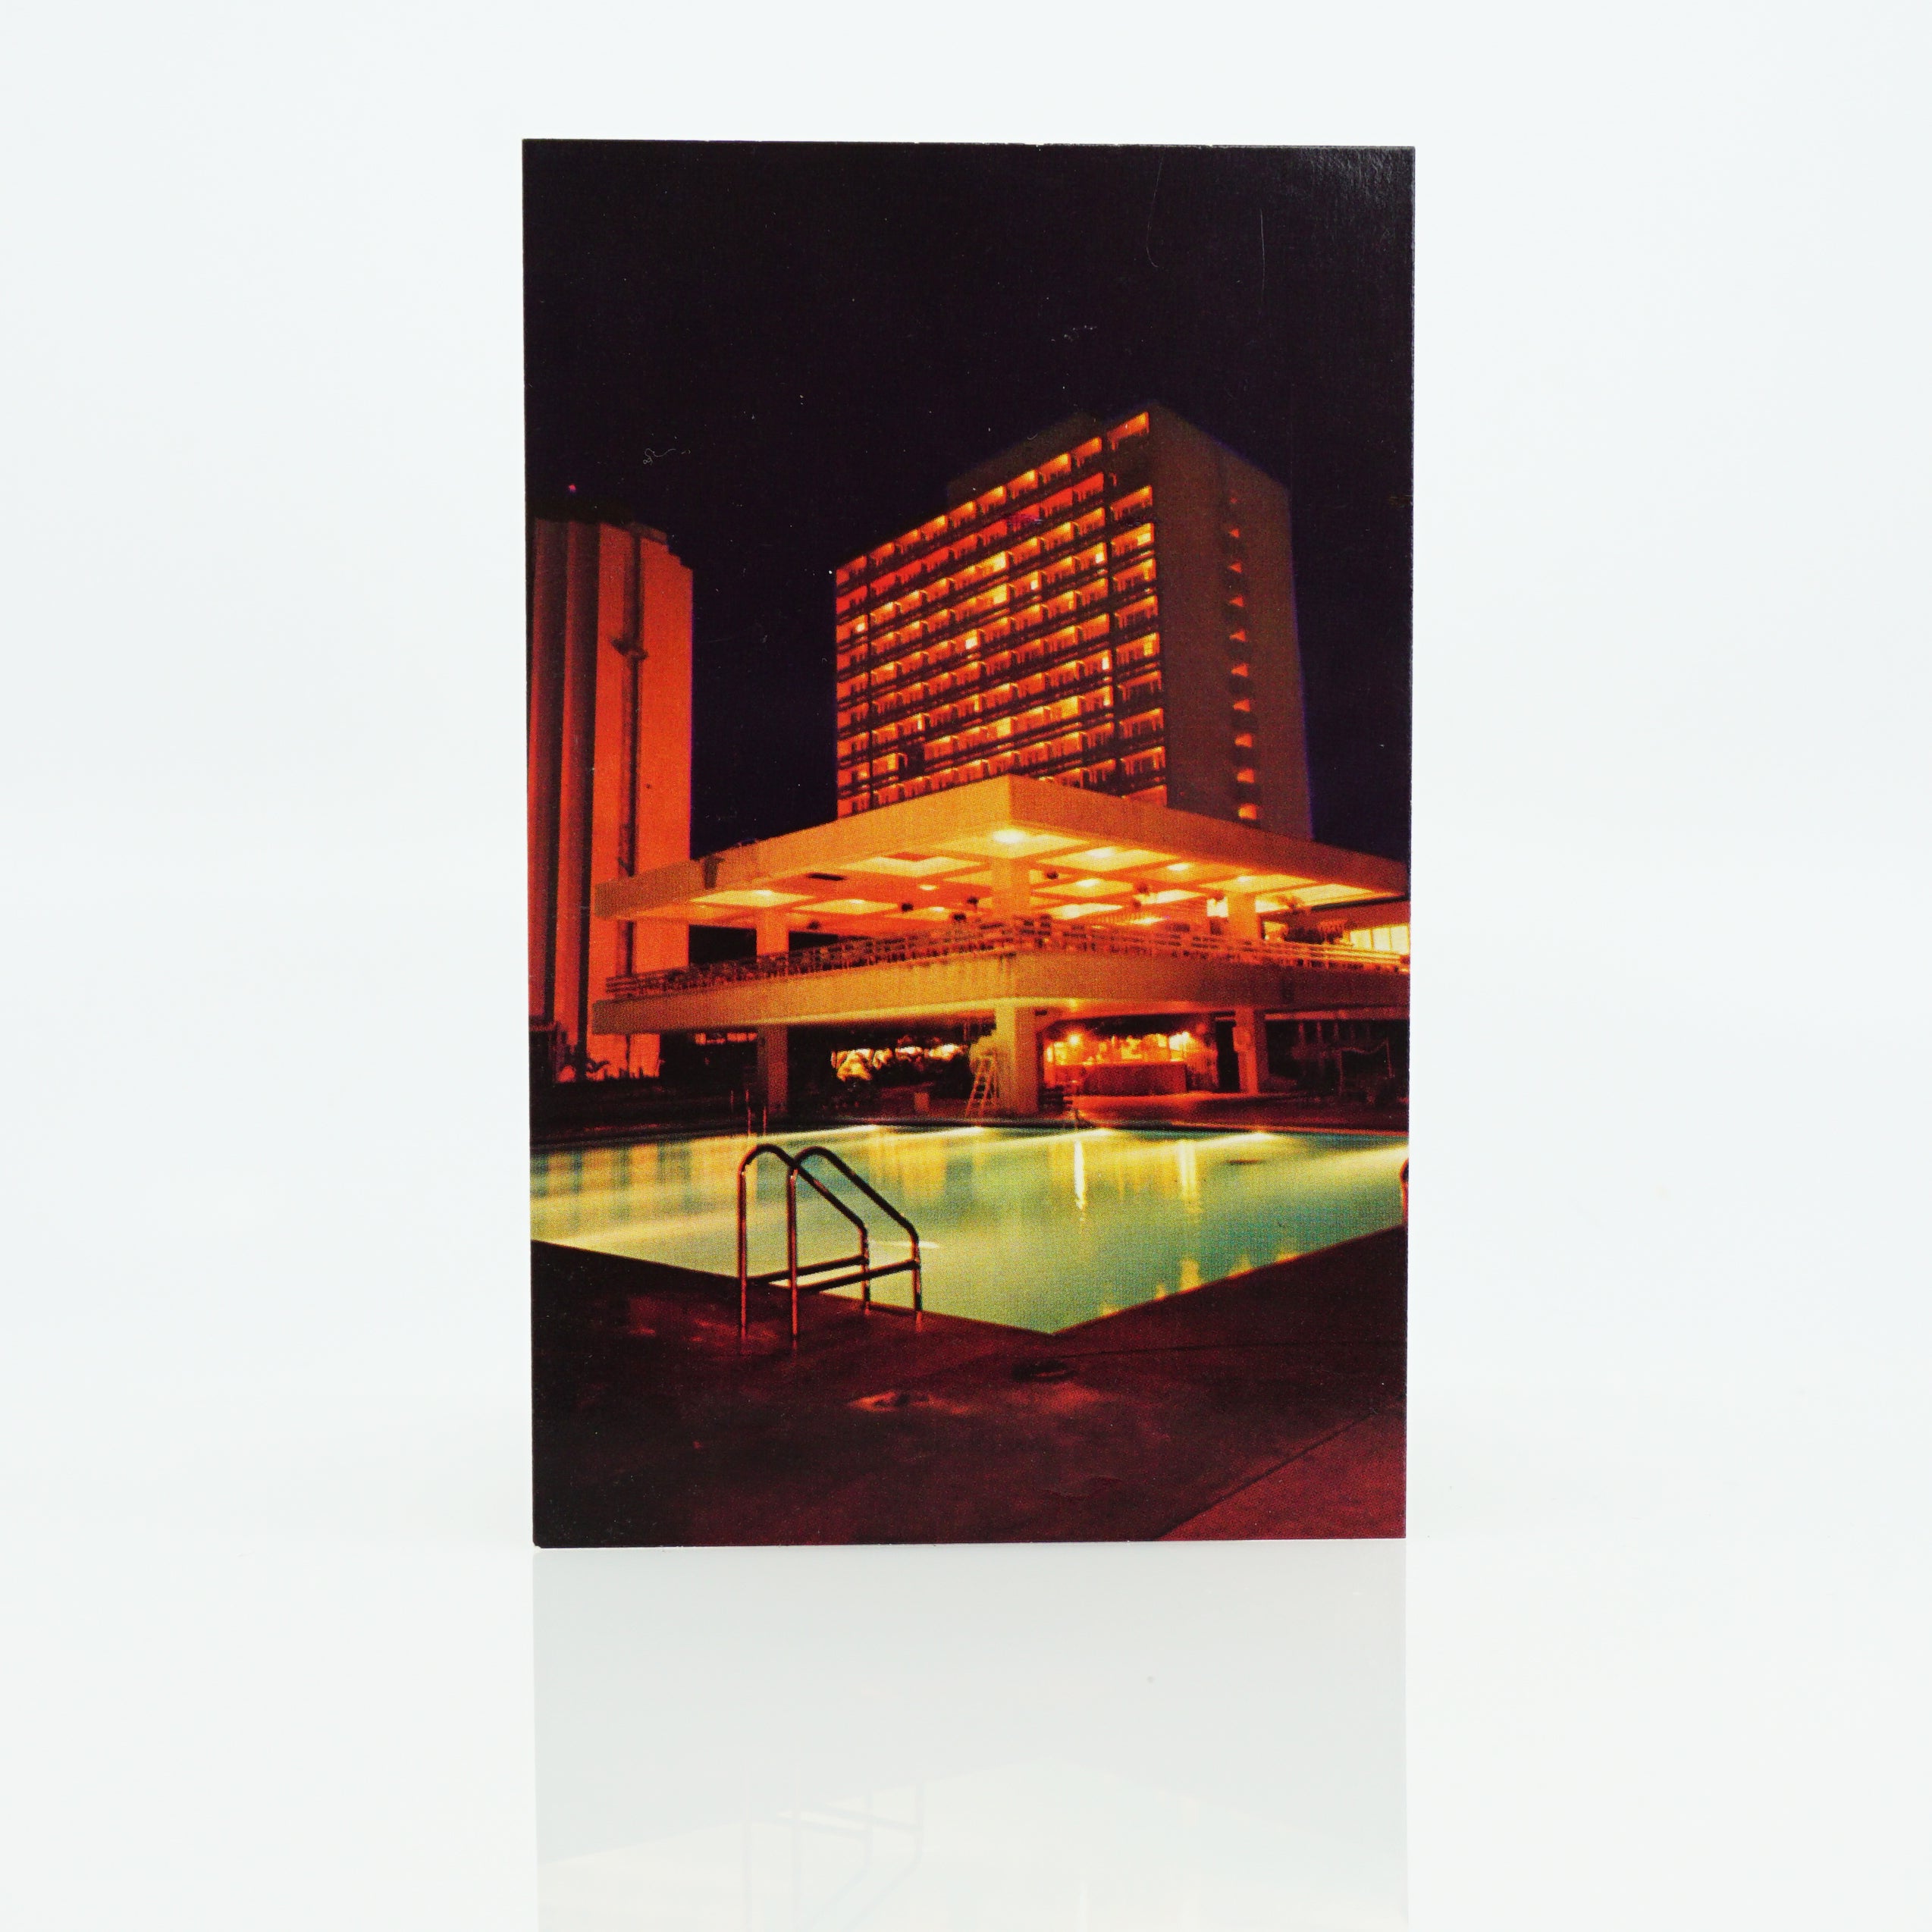 Pre-1970 Unused Postcard. Republique De La Cote D'Ivoire, Abijan, Africa. Hotel Ivoira.